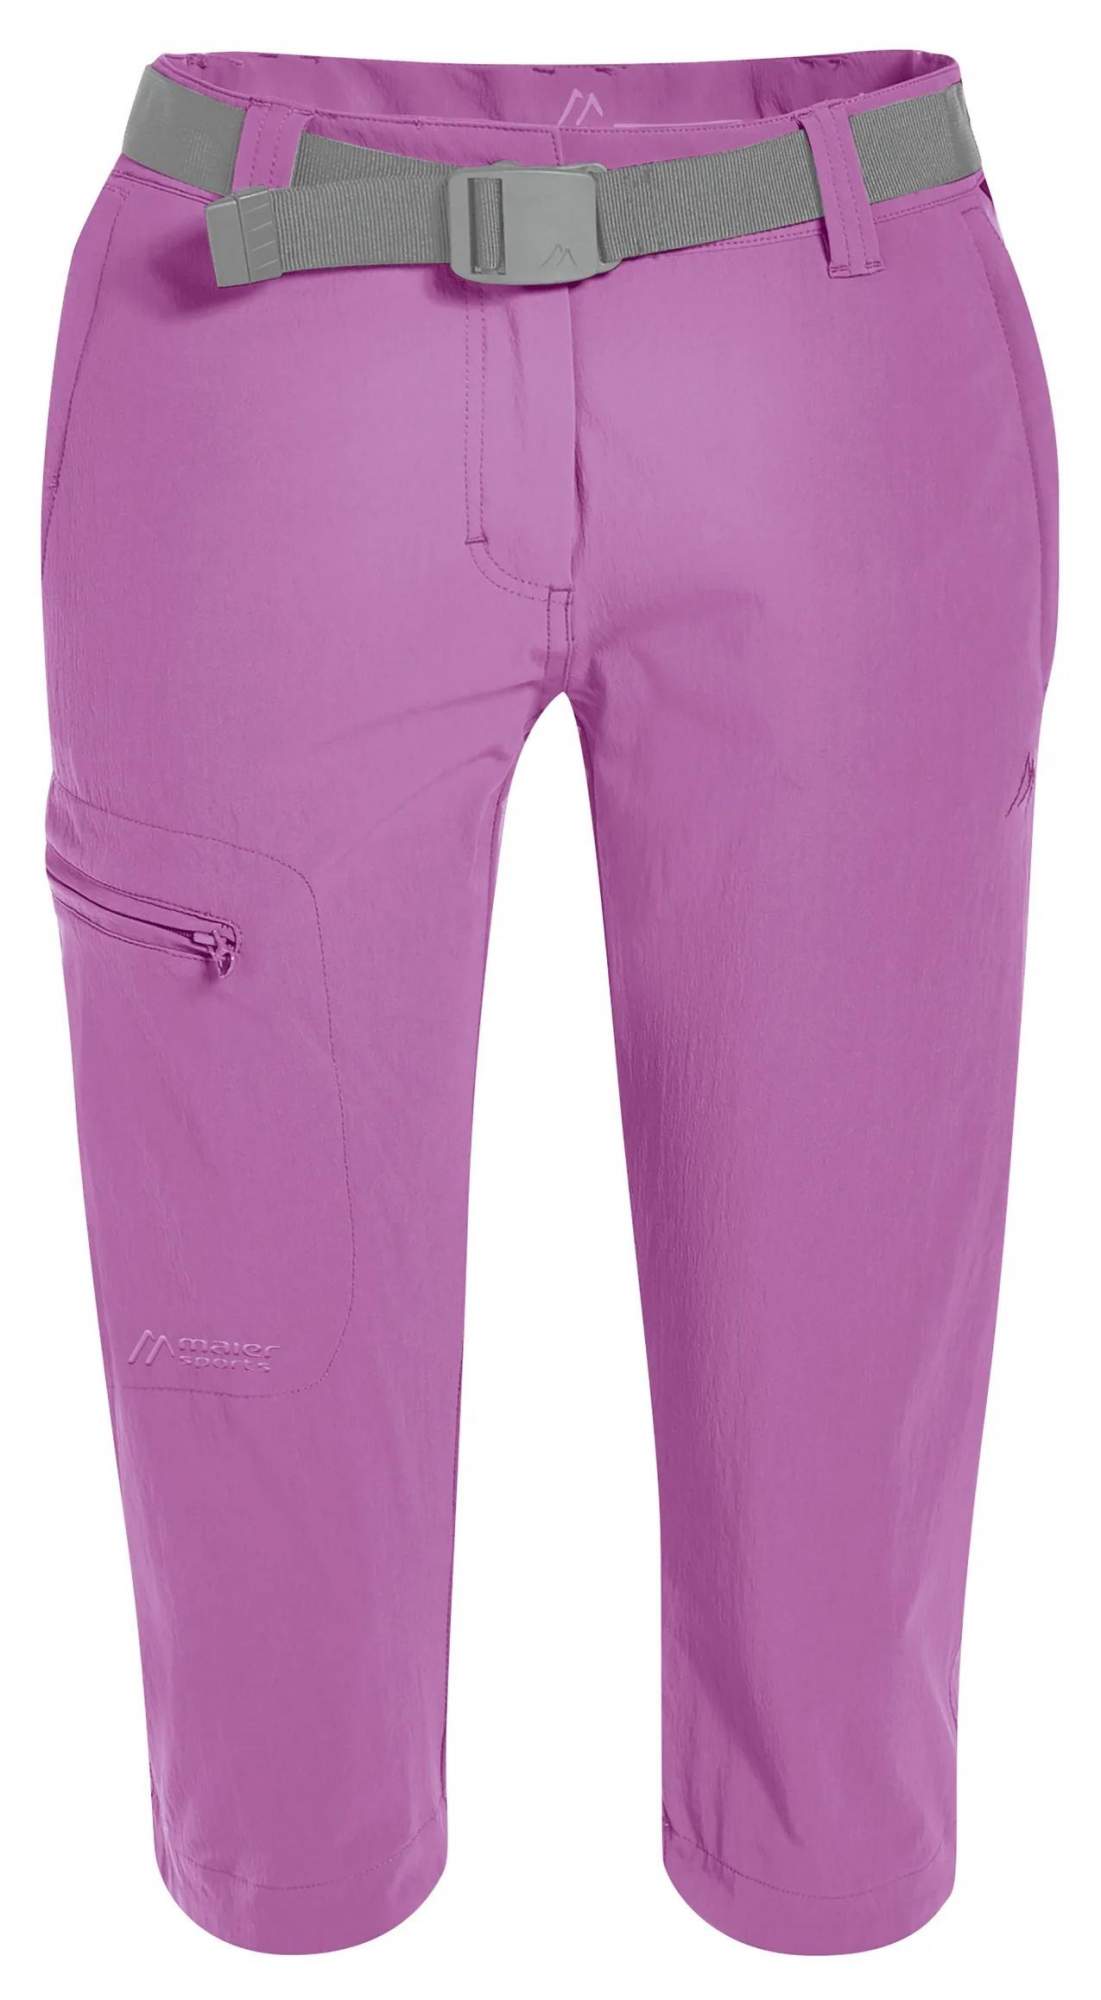 Спортивные шорты женские Maier Sports 231007_0143 фиолетовые 34 EU